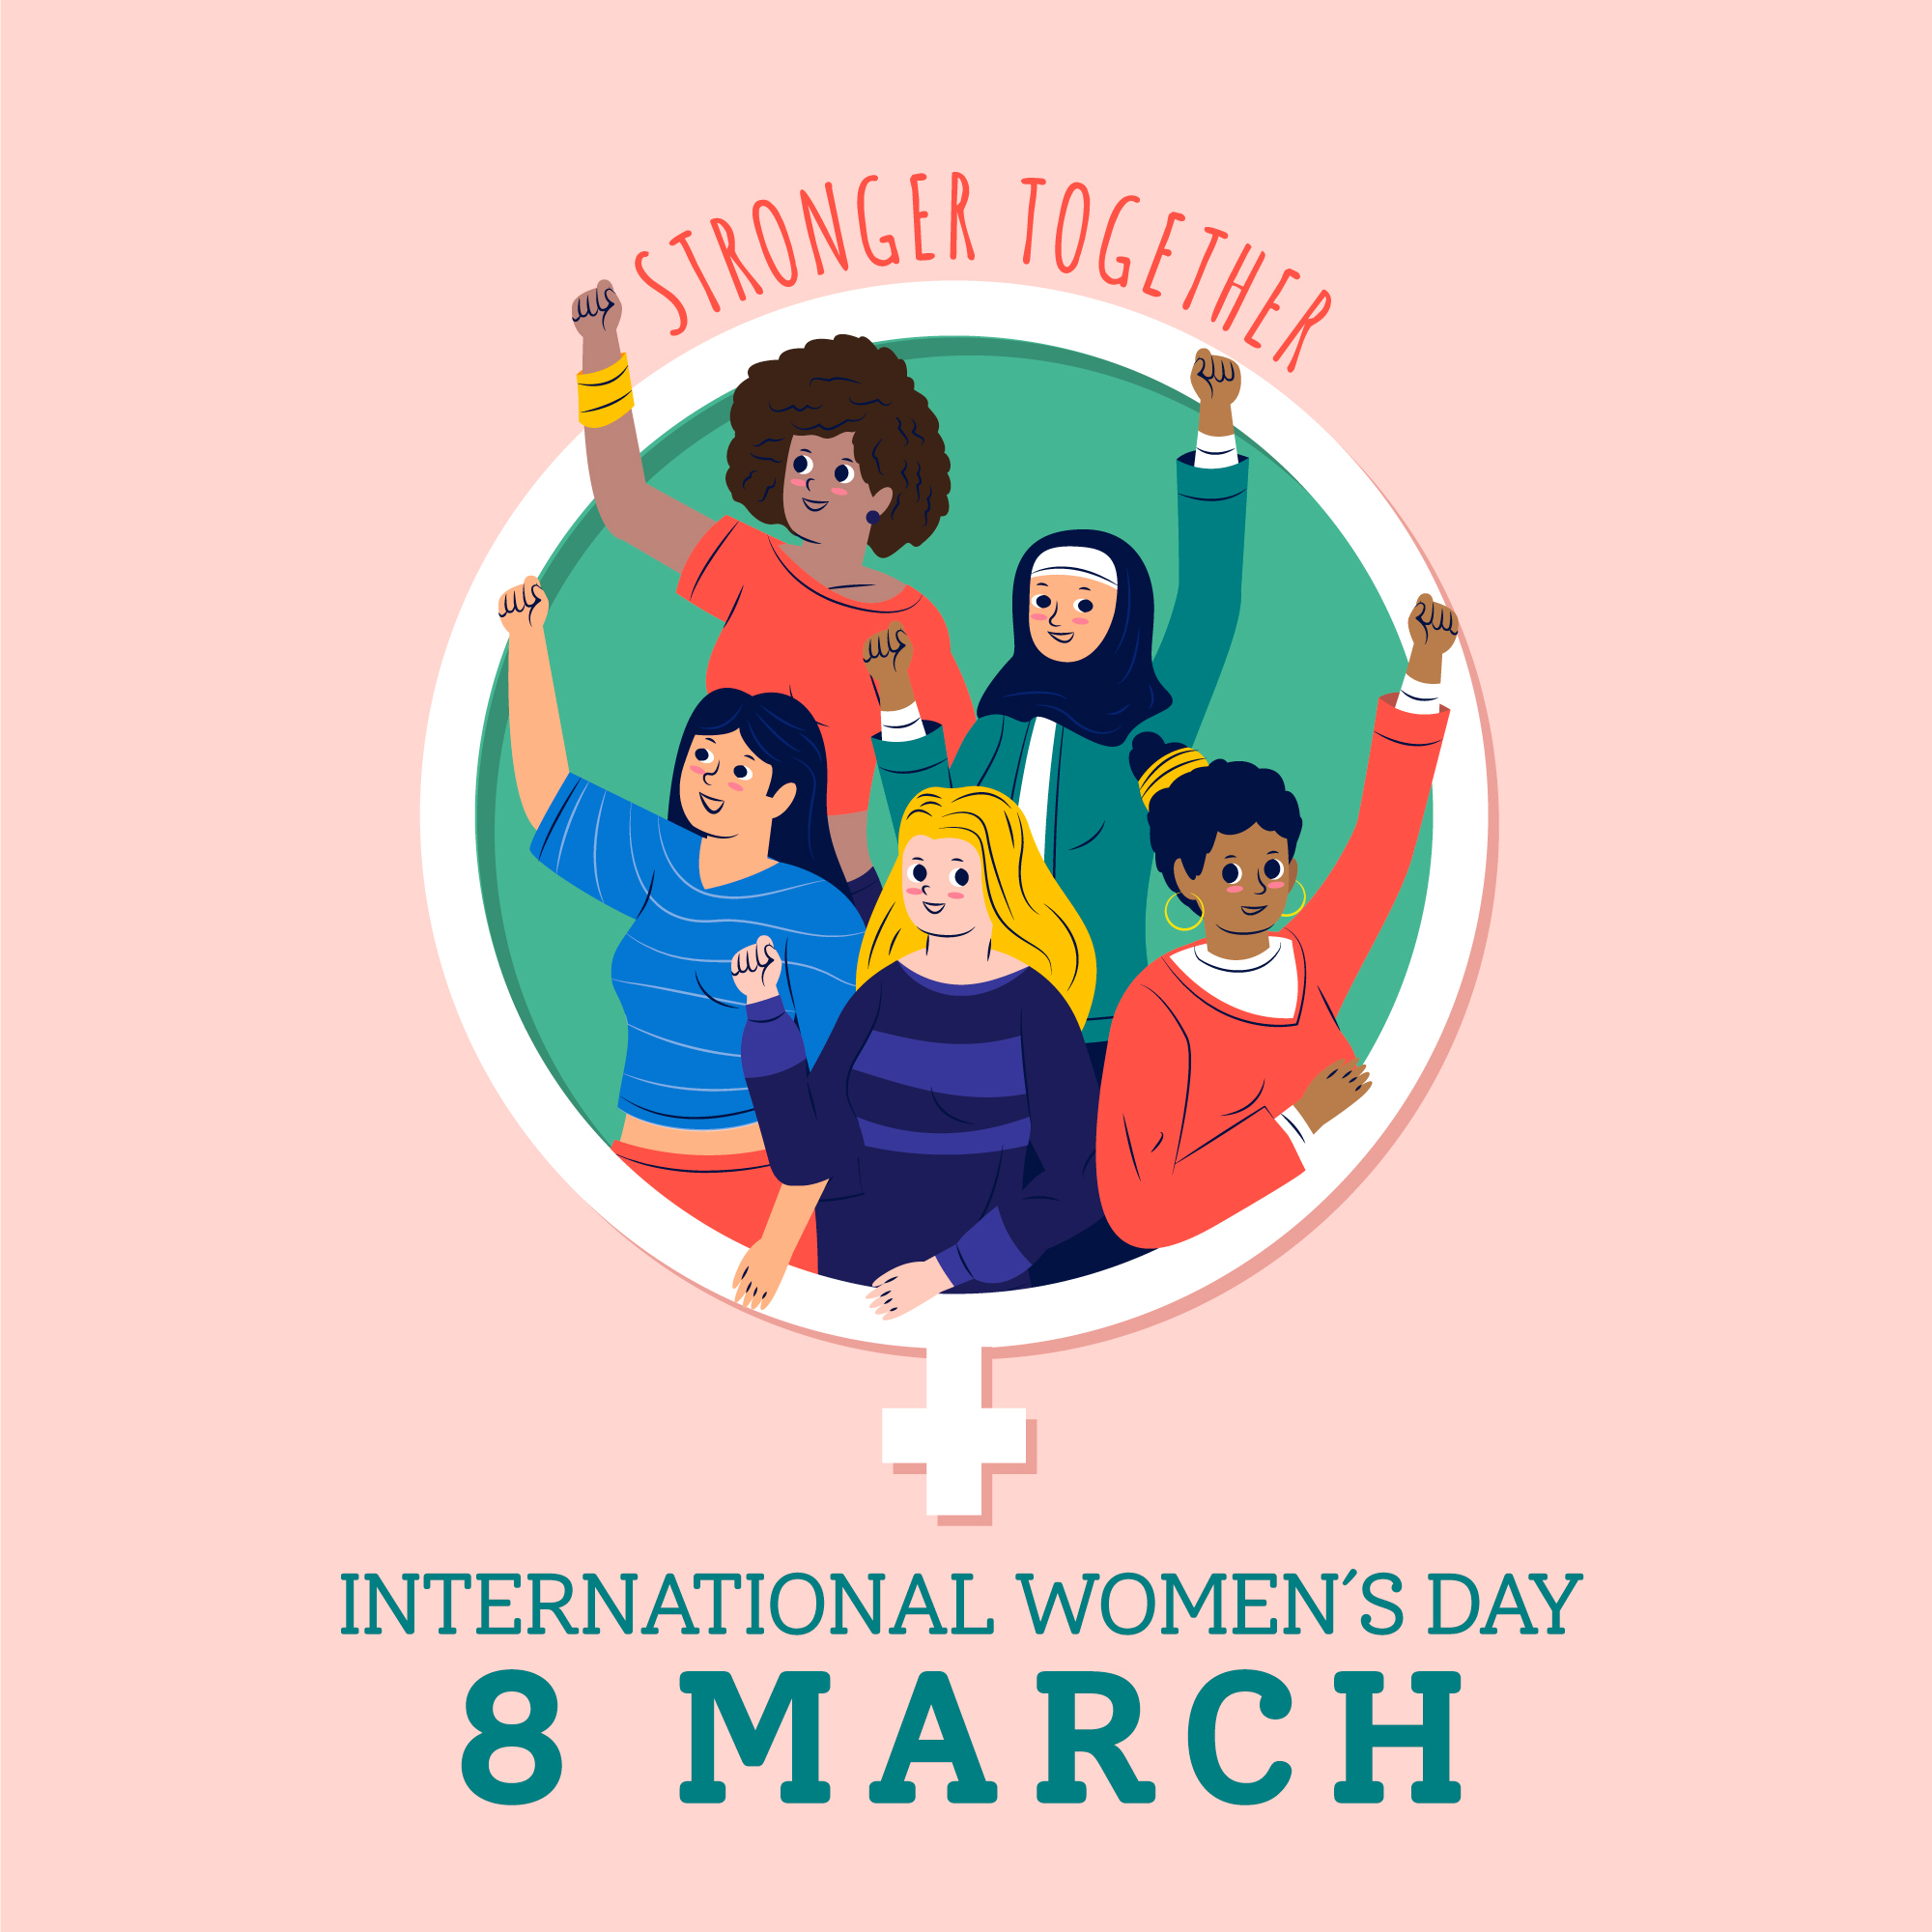 Hari perempuan internasional